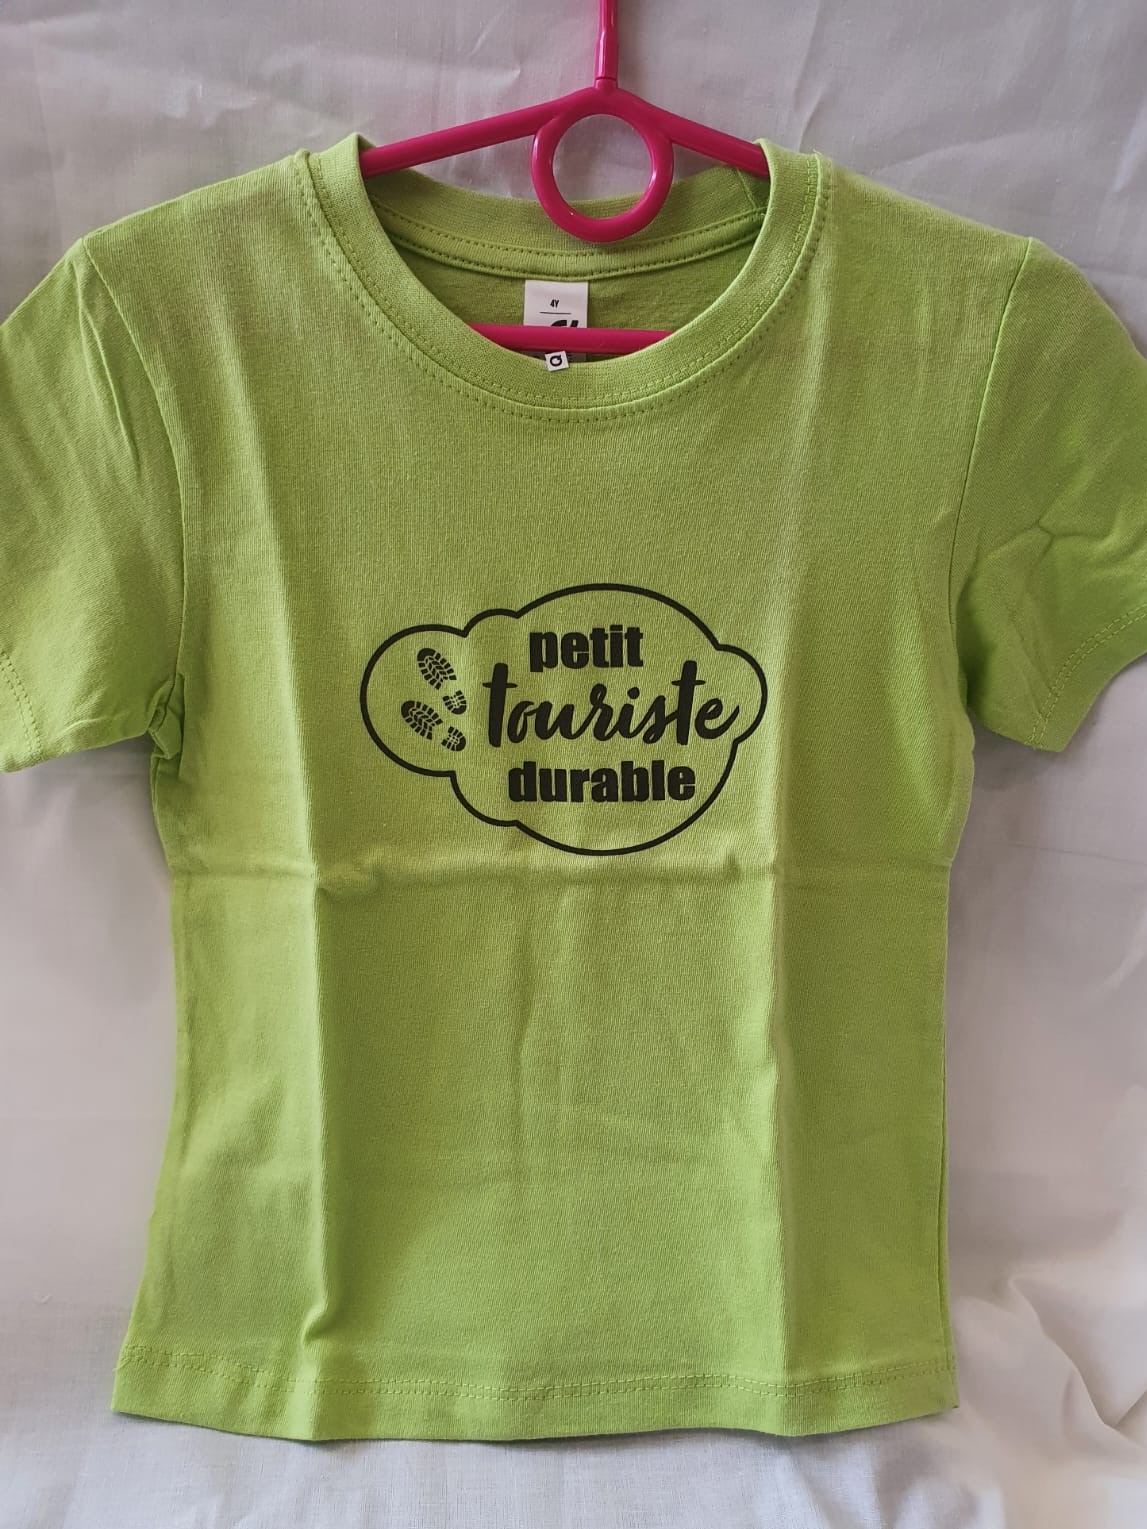 Tee-shirt enfant “Petit touriste durable” vert – 10 ans